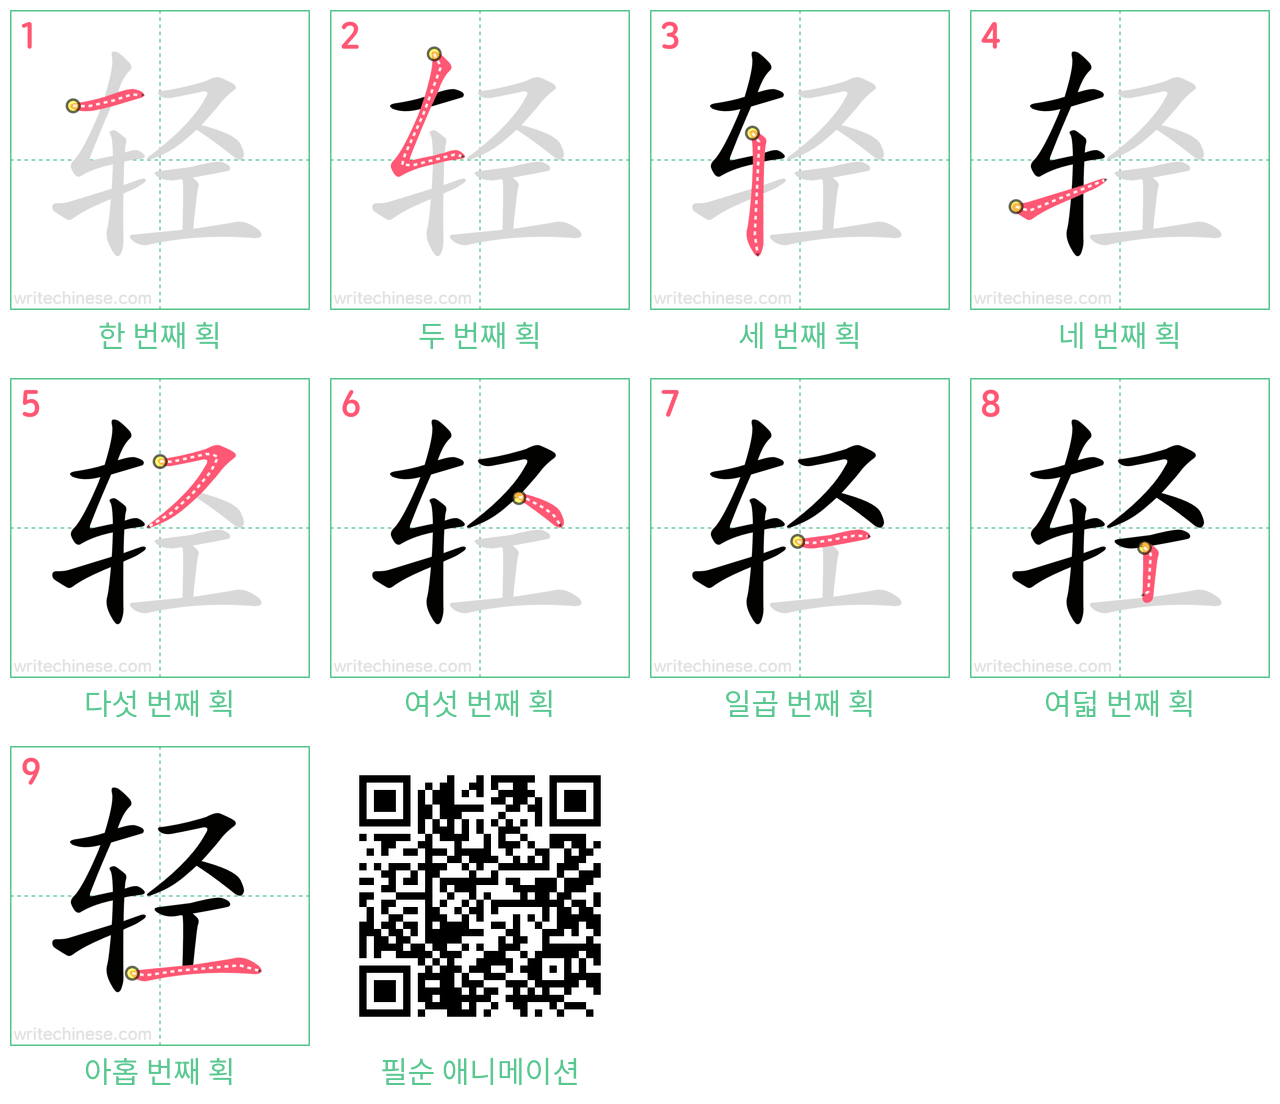 轻 step-by-step stroke order diagrams